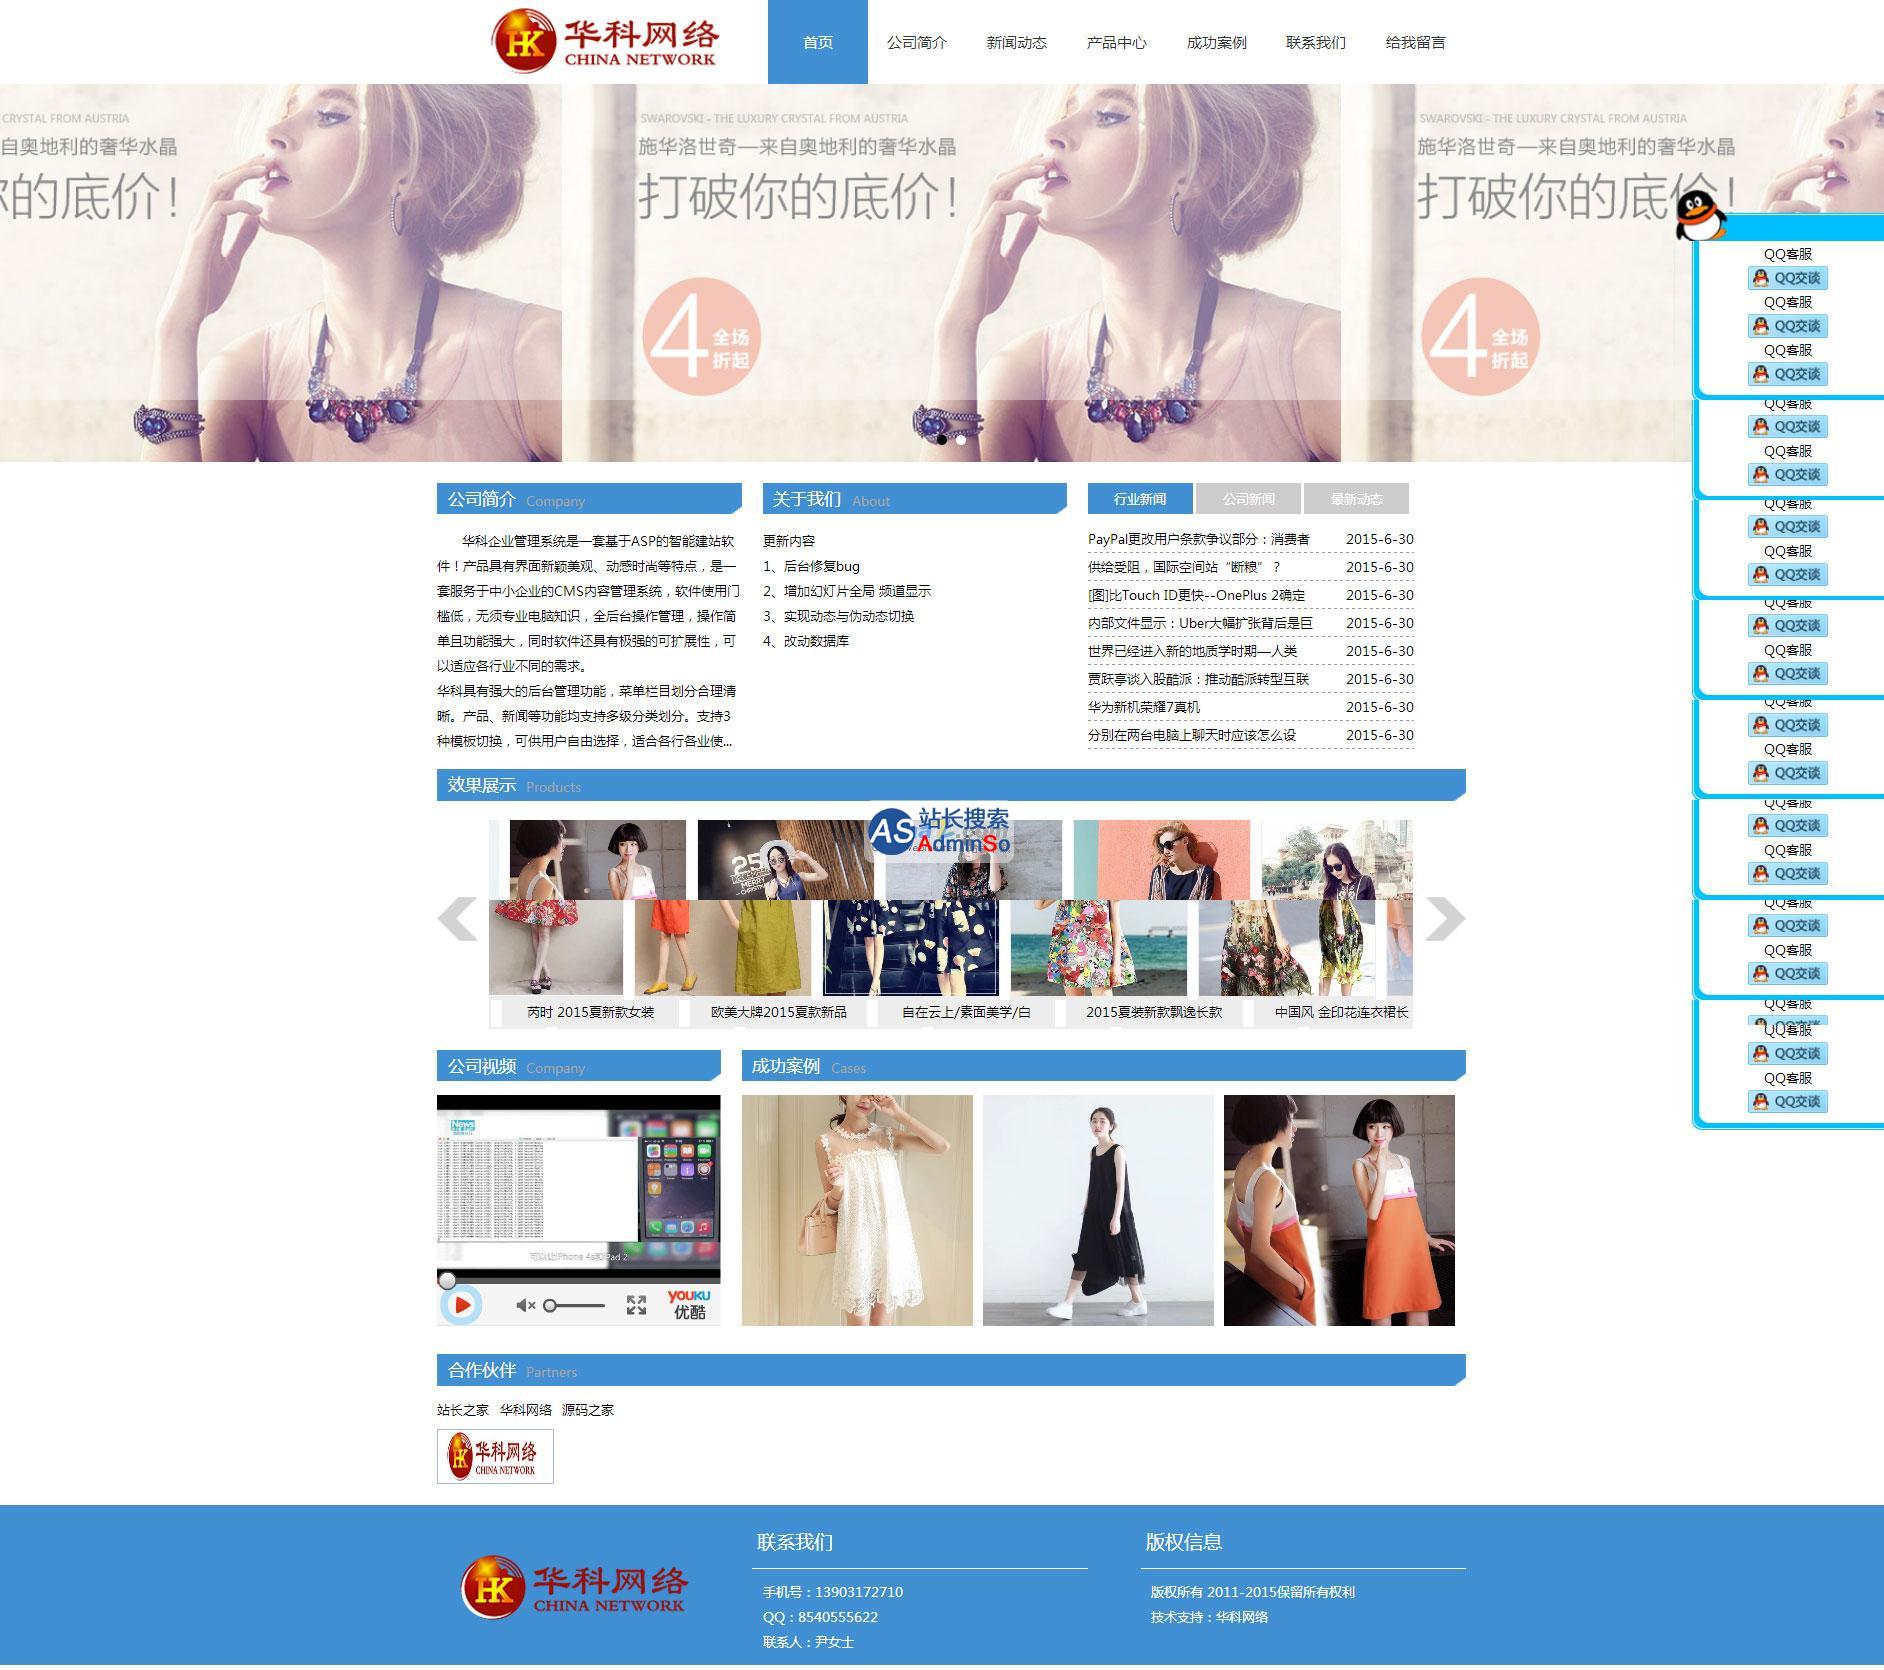 华科企业网站管理系统 演示图片